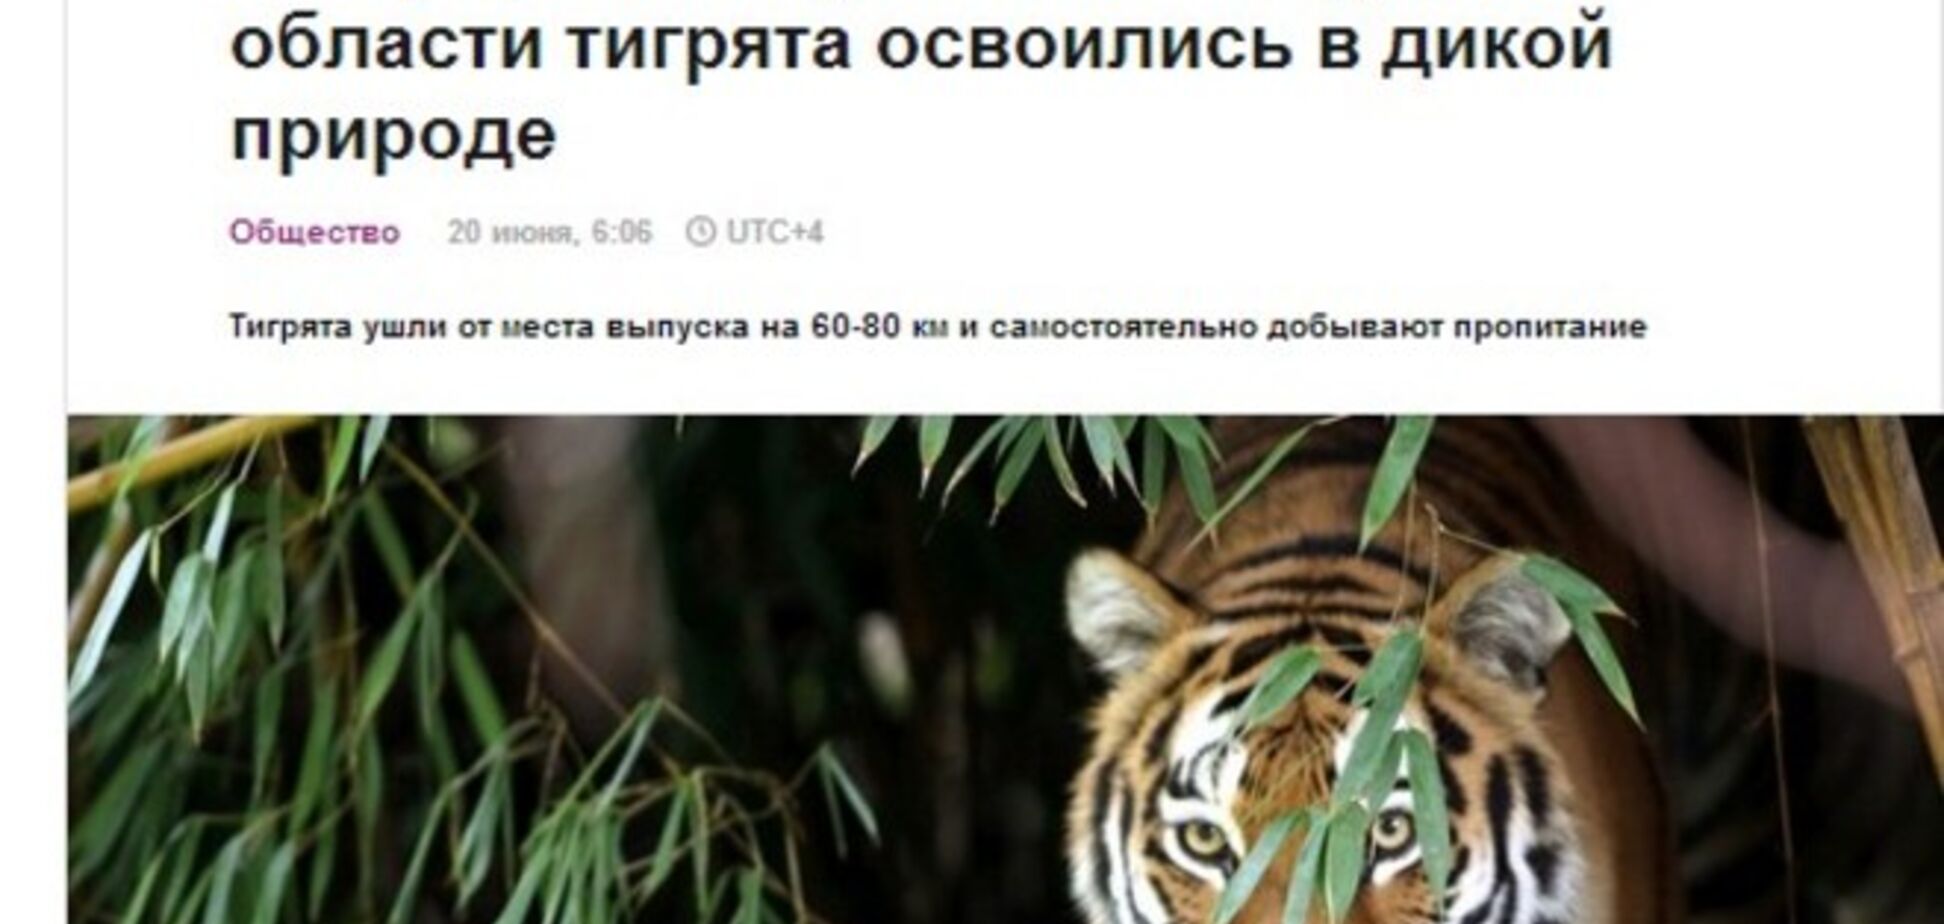 У той час як на Донбасі йдуть бої, російські ЗМІ пліткують про тигренята, випущених Путіним